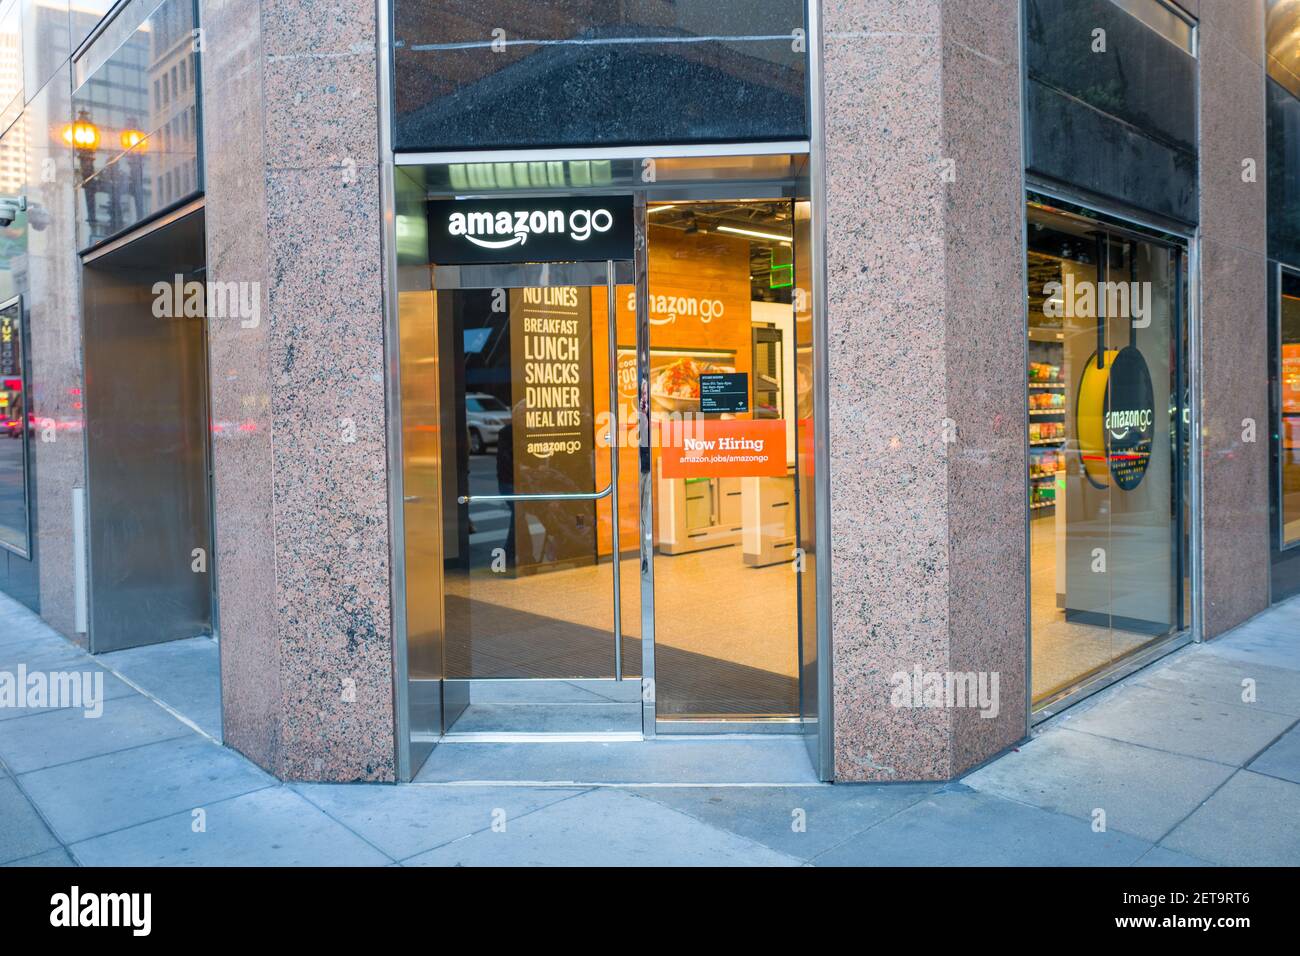 Fassade mit Logo und Schild im Amazon Go Concept Store, einem von Amazon  betriebenen Ladengeschäft, in dem Käufer Artikel aus den Regalen nehmen und  ohne Kasse verlassen können, wobei ihre Artikel automatisch